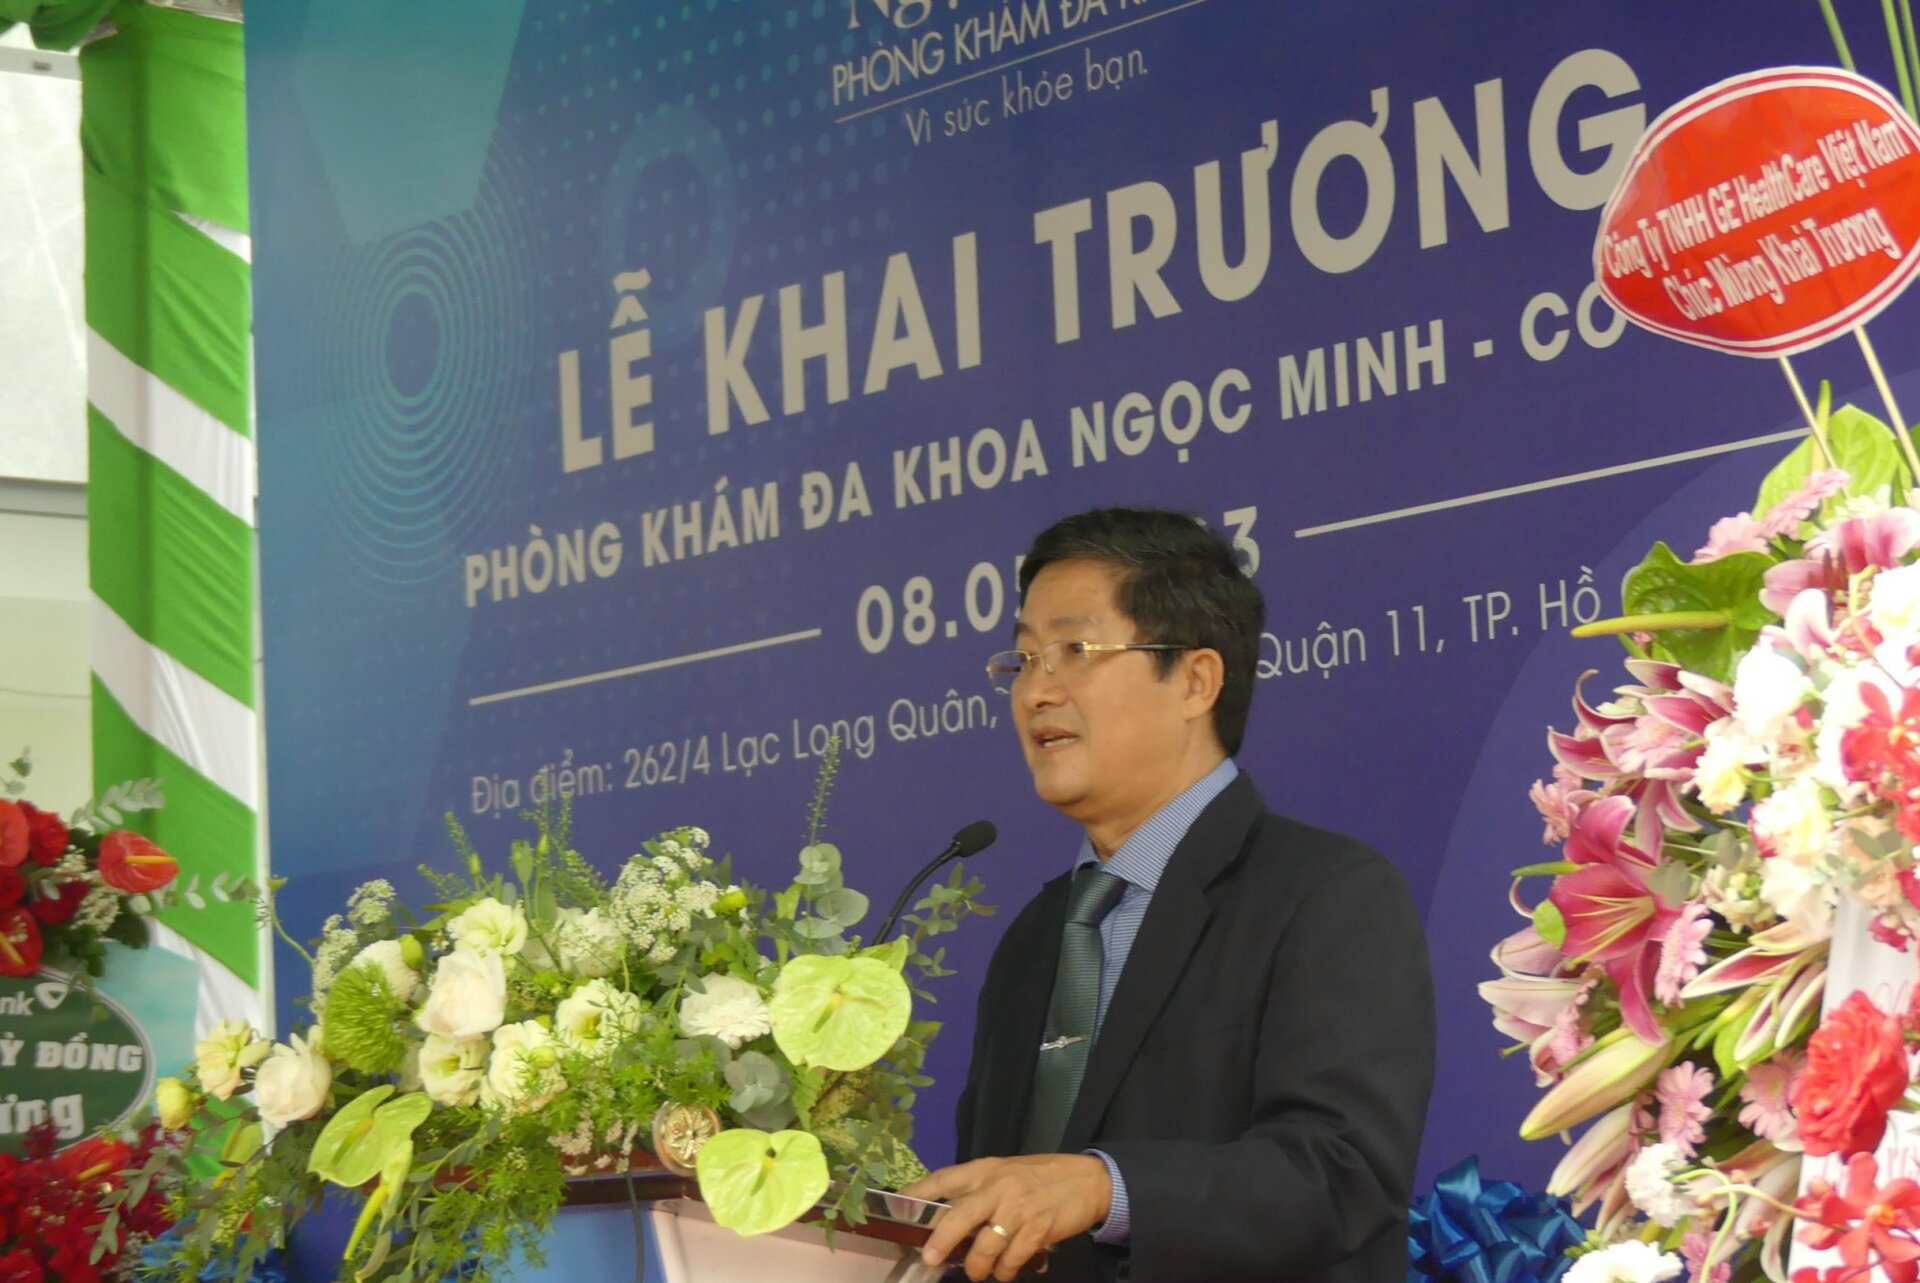 PGS.TS Trần Văn Ngọc, Chủ tịch Hội đồng thành viên-Hội đồng chuyên môn của phòng khám